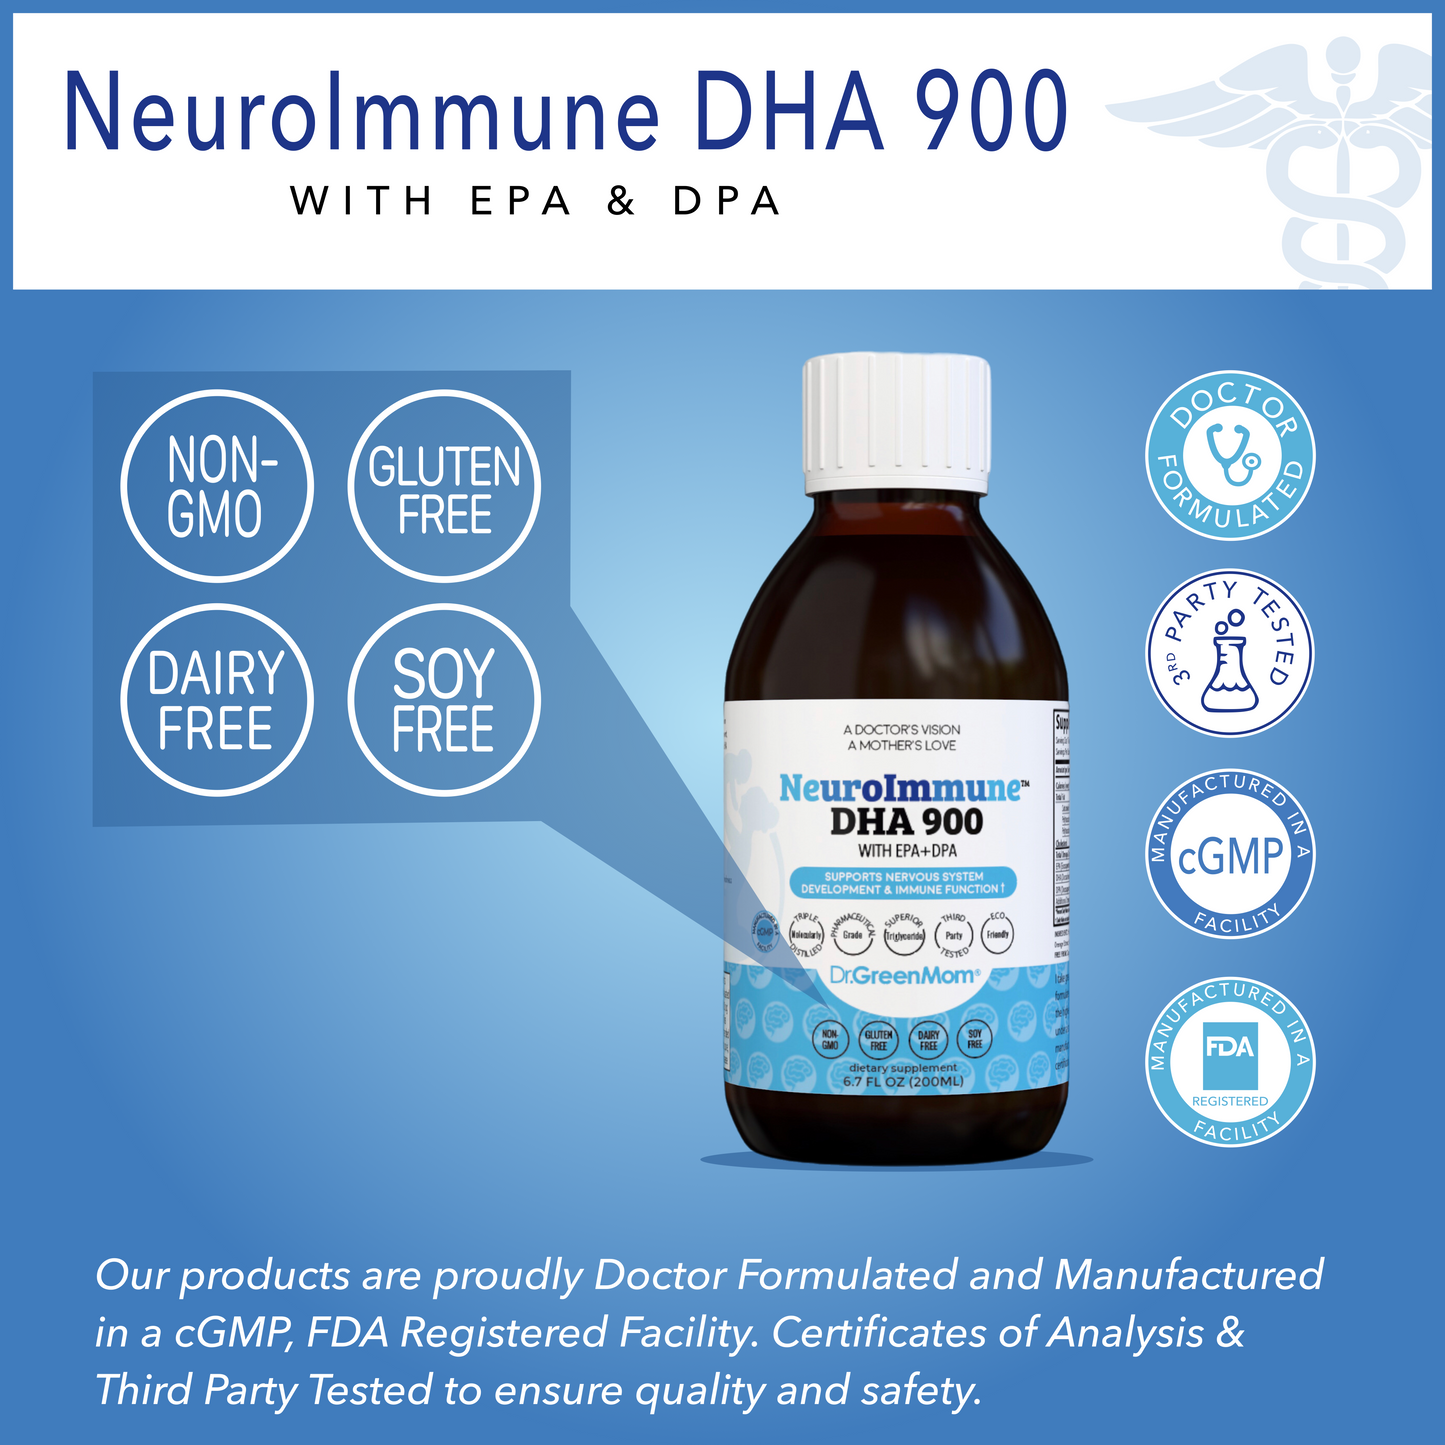 NeuroImmune DHA 900™